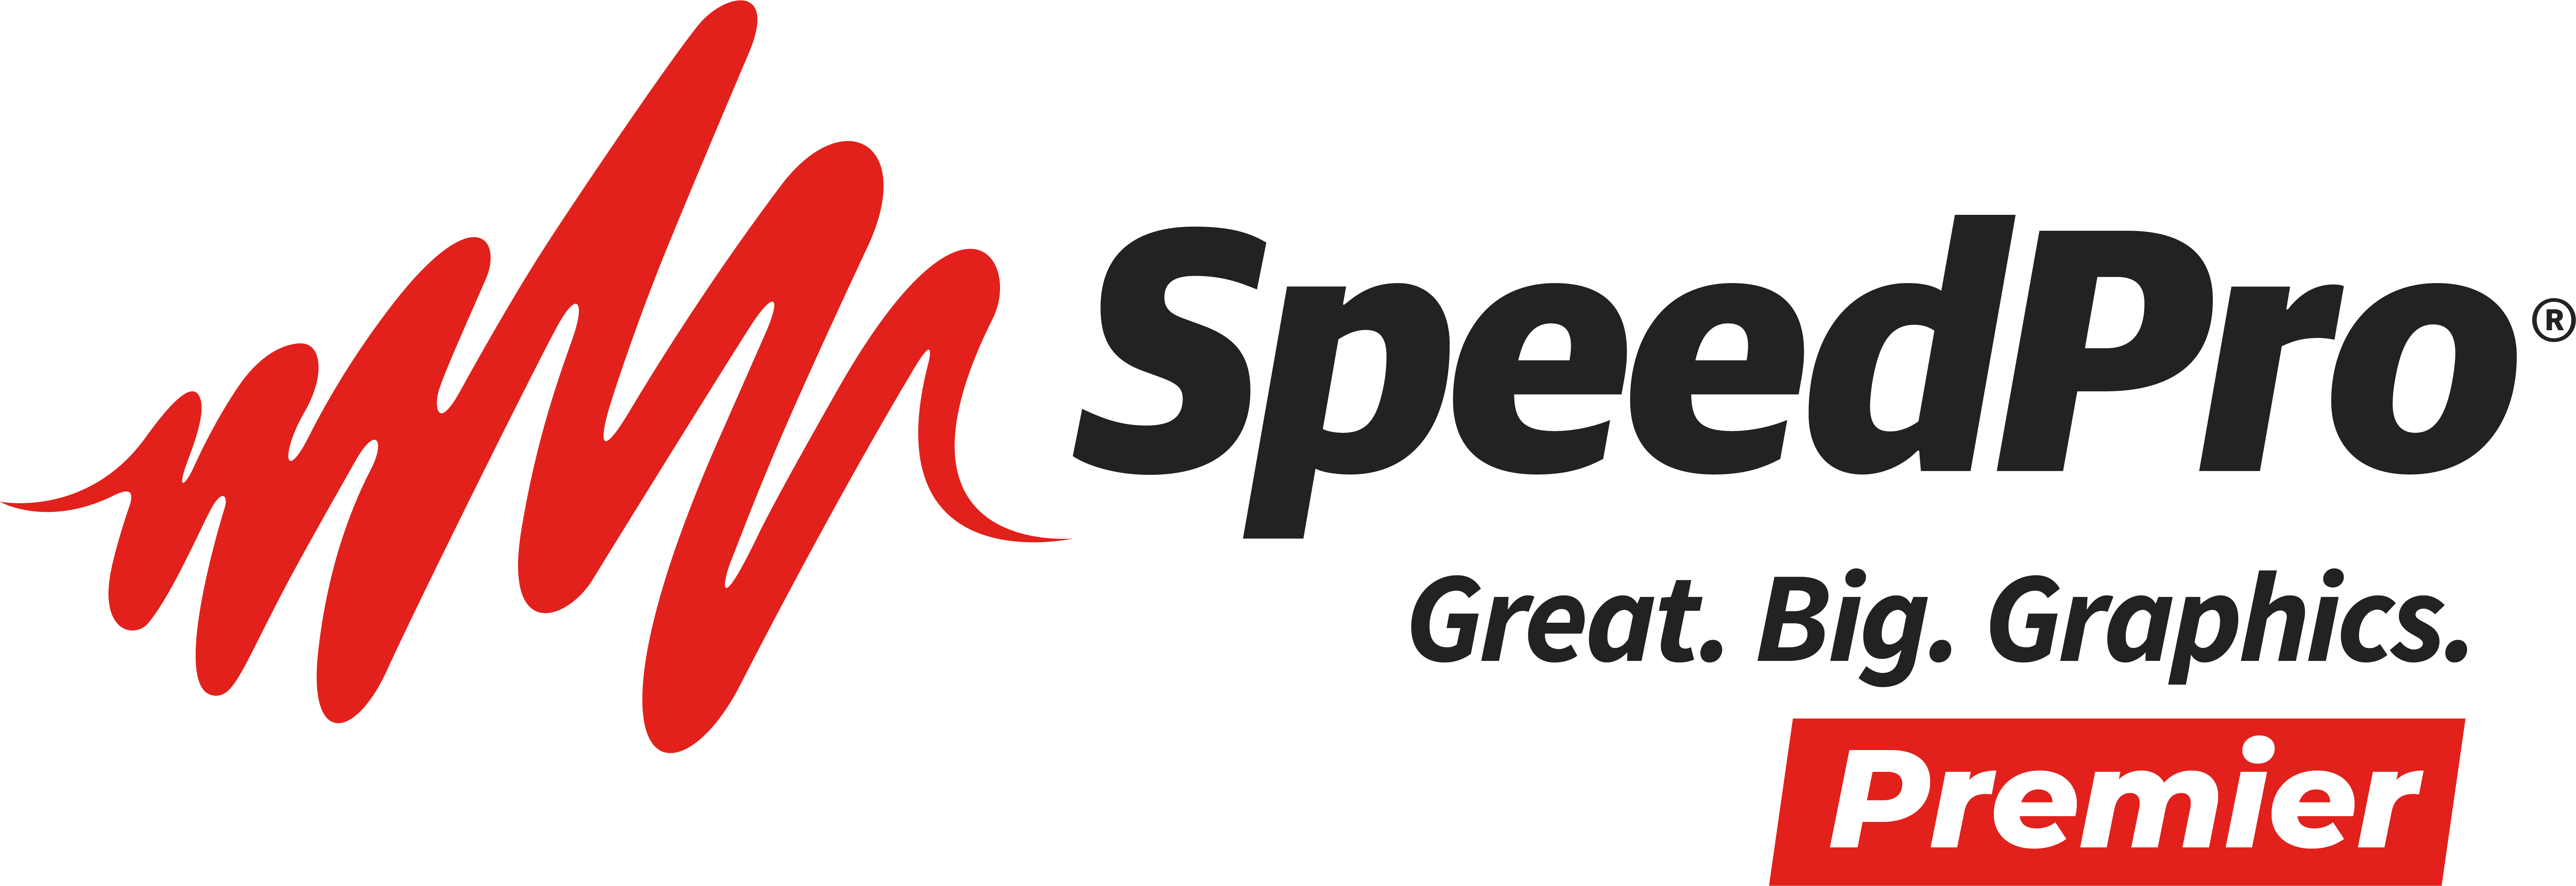 SpeedPro Premier